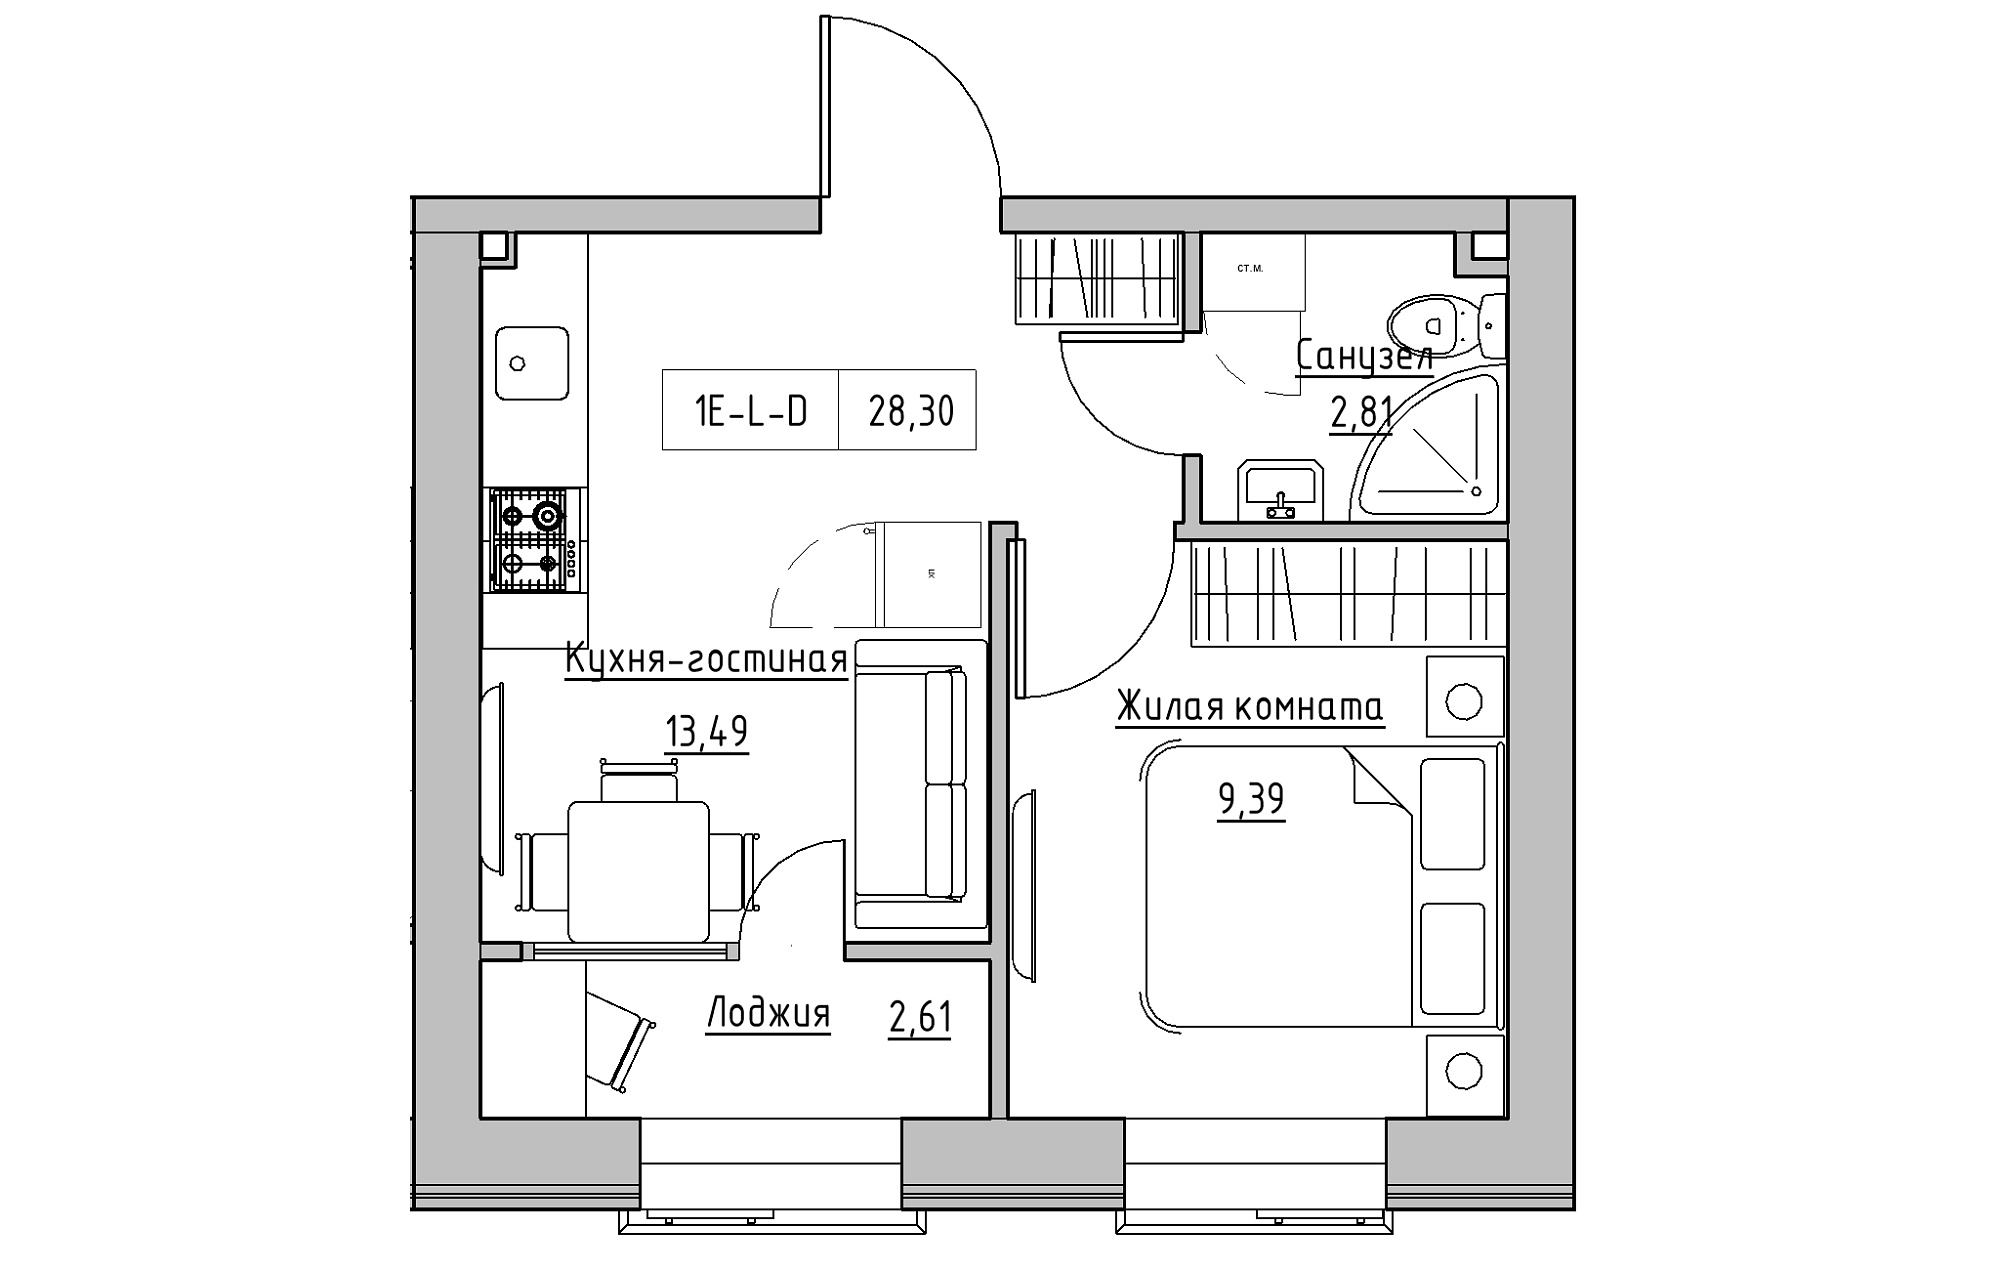 Планировка 1-к квартира площей 28.3м2, KS-018-05/0001.